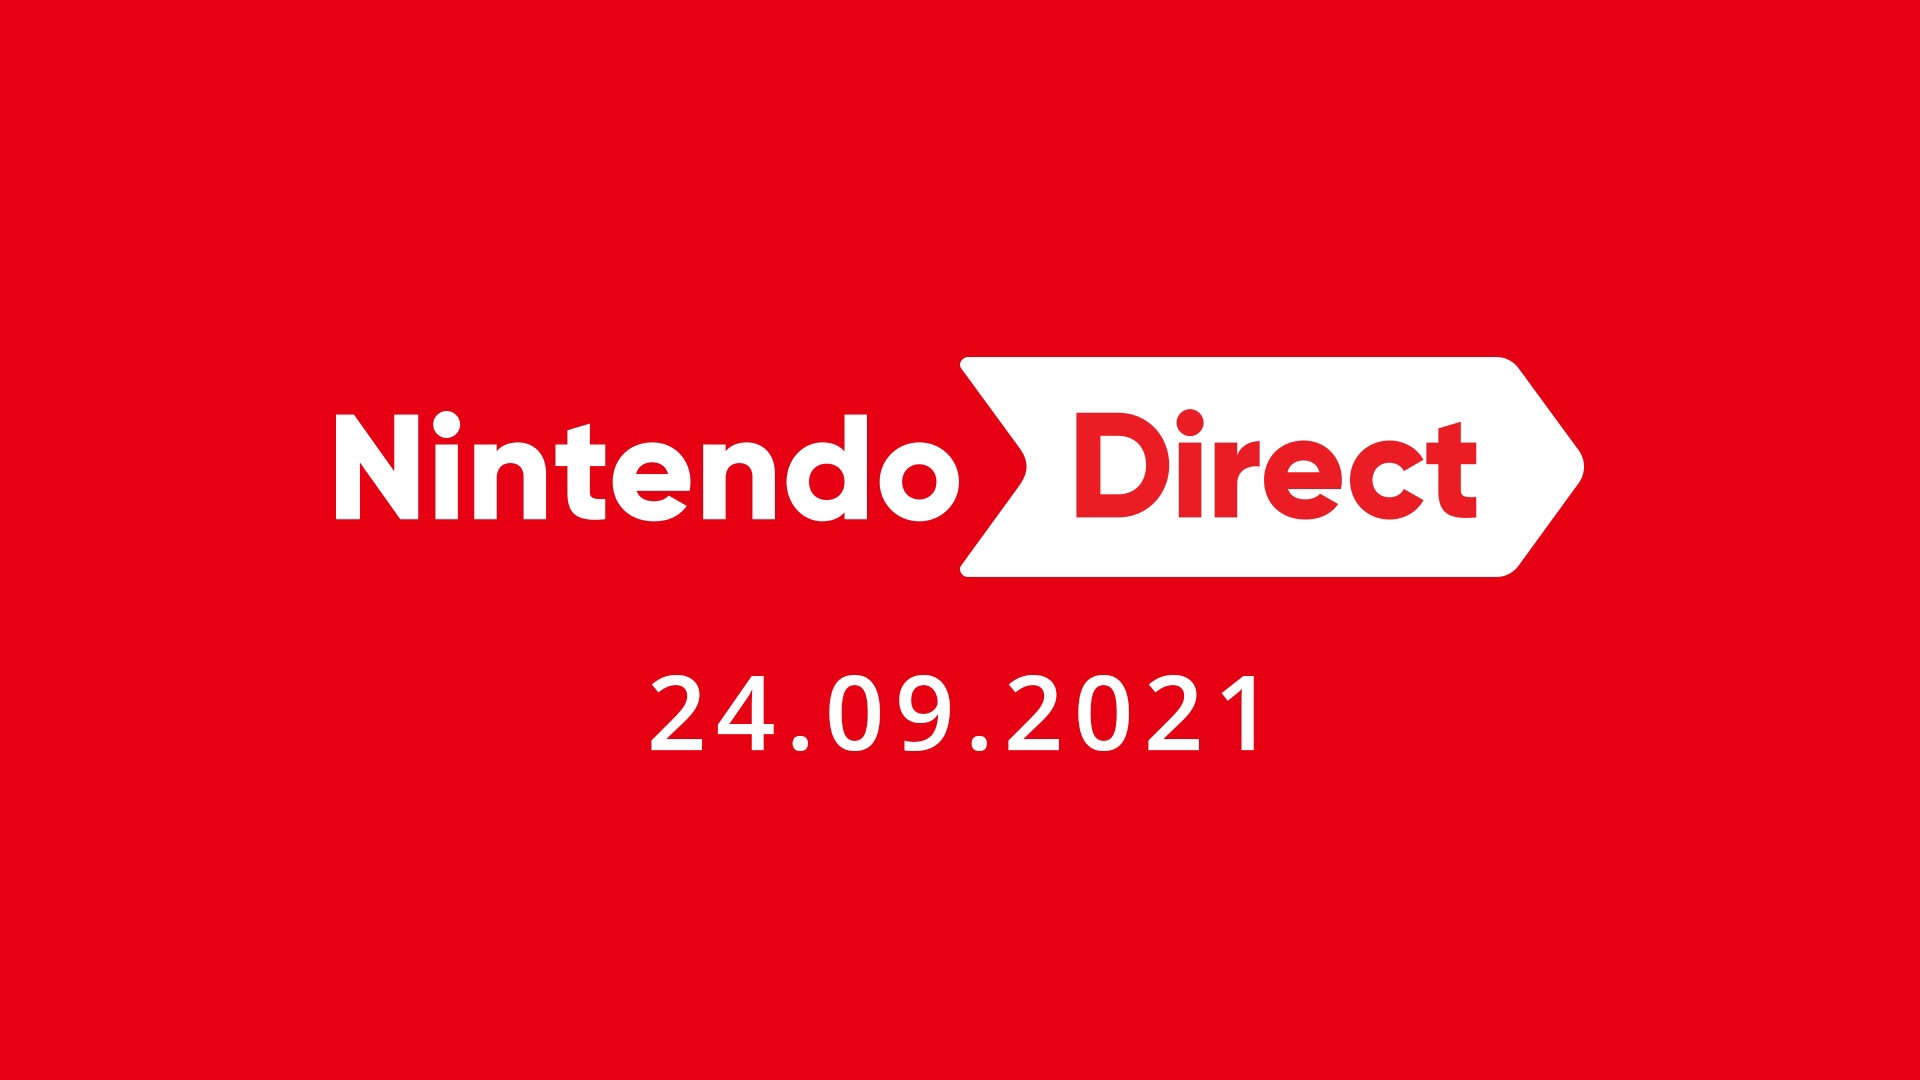 Вы сейчас просматриваете Nintendo Direct быть